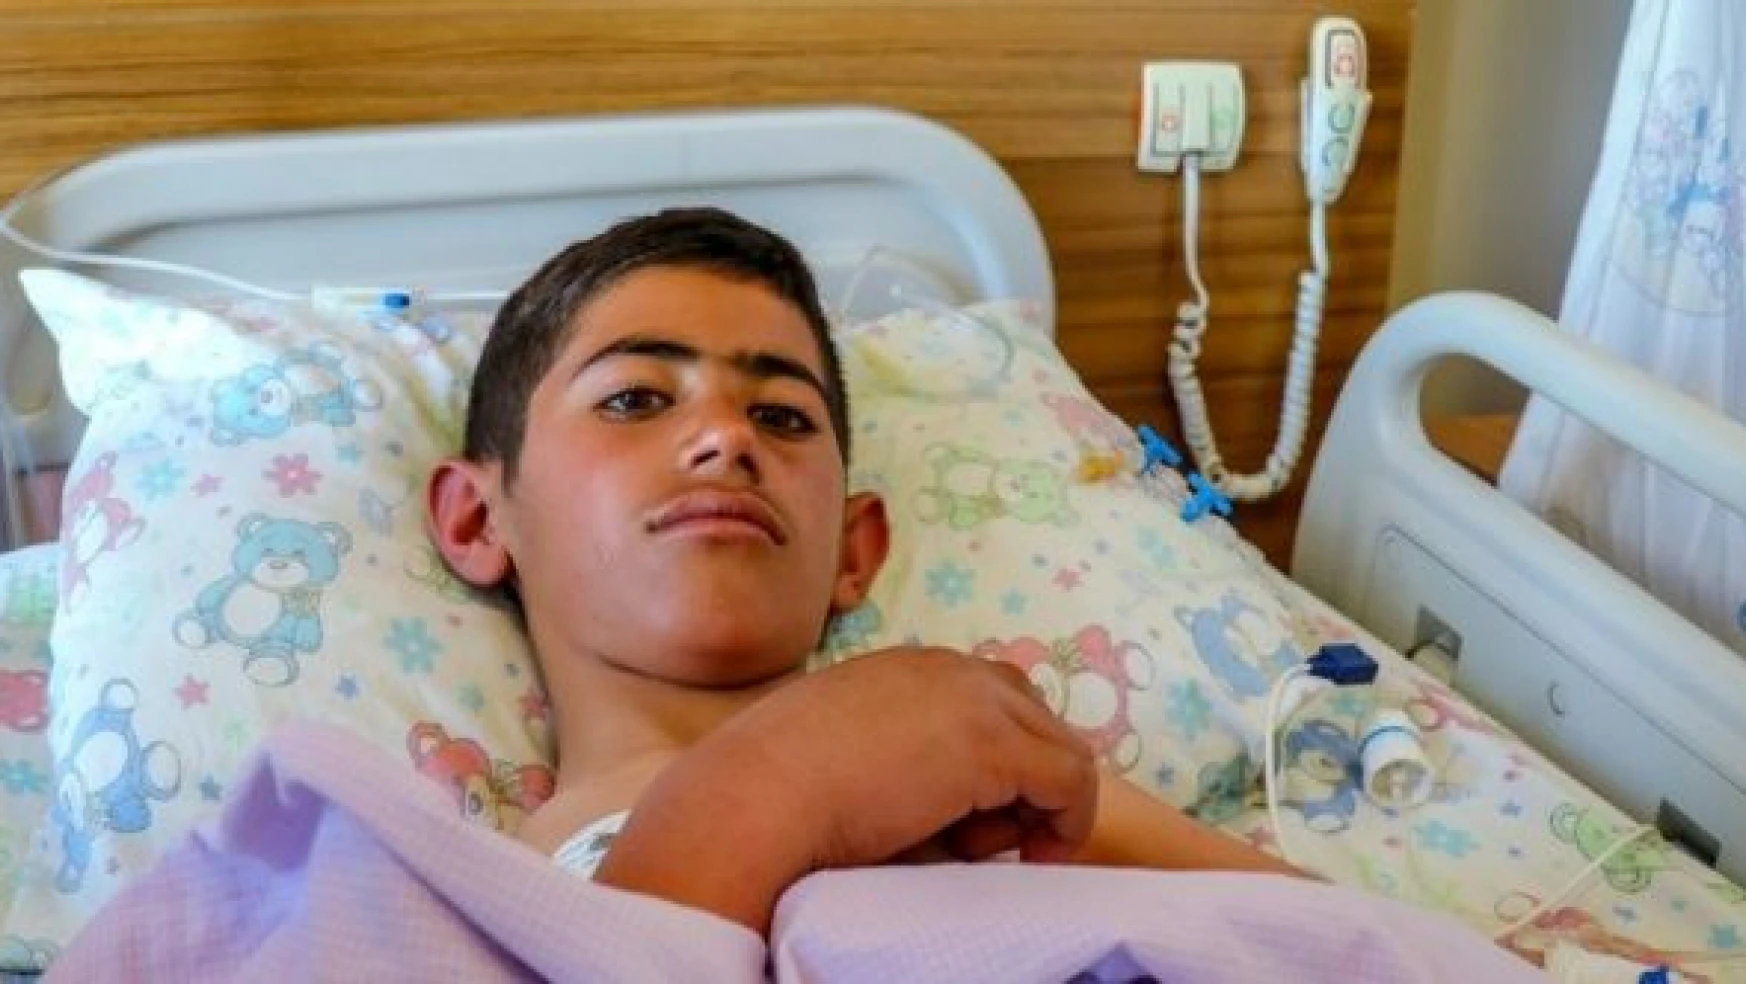 Kars'ta kaybolduktan 4 gün sonra bulunan çocuk Van'da tedavi ediliyor